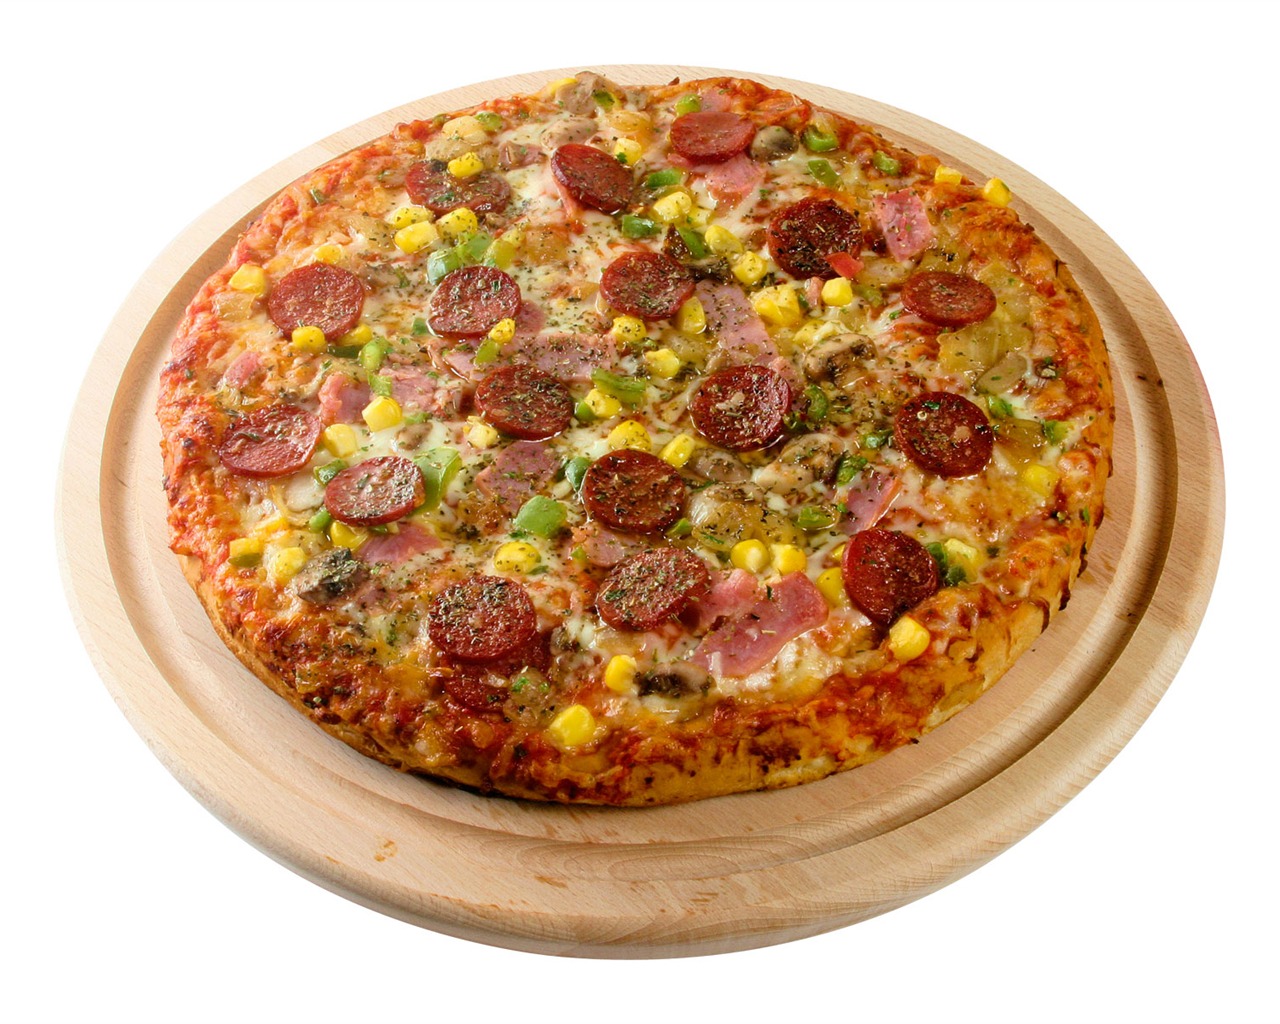 Fondos de pizzerías de Alimentos (3) #18 - 1280x1024